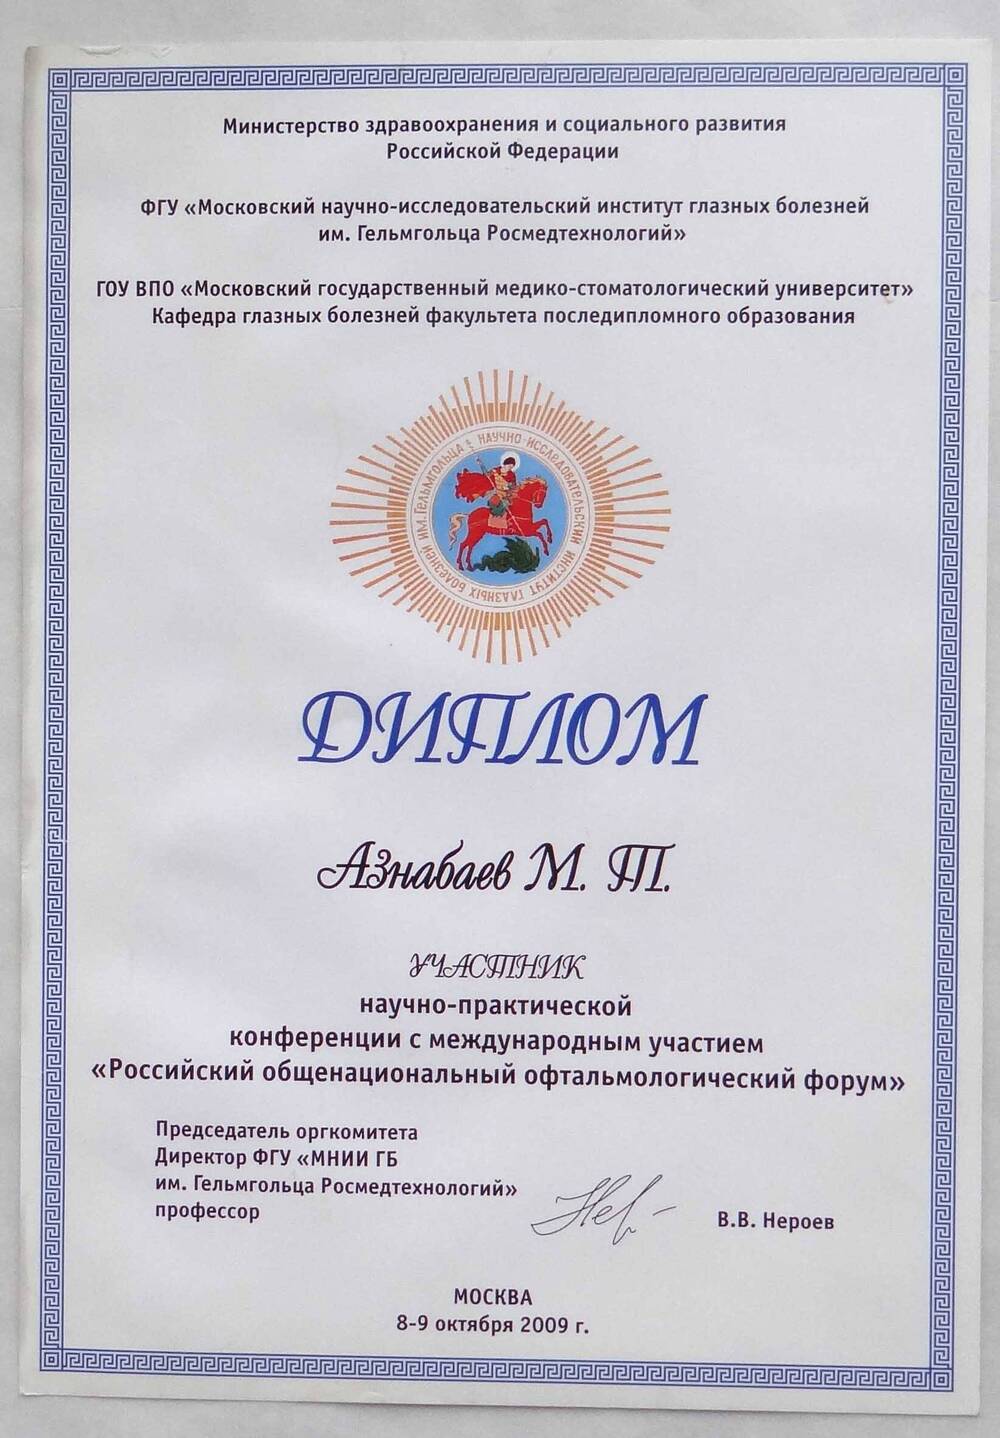 Диплом Азнабаева М.Т. - участника научно-практической конференции с международным участием Российской общенациональный офтальмологический форум.